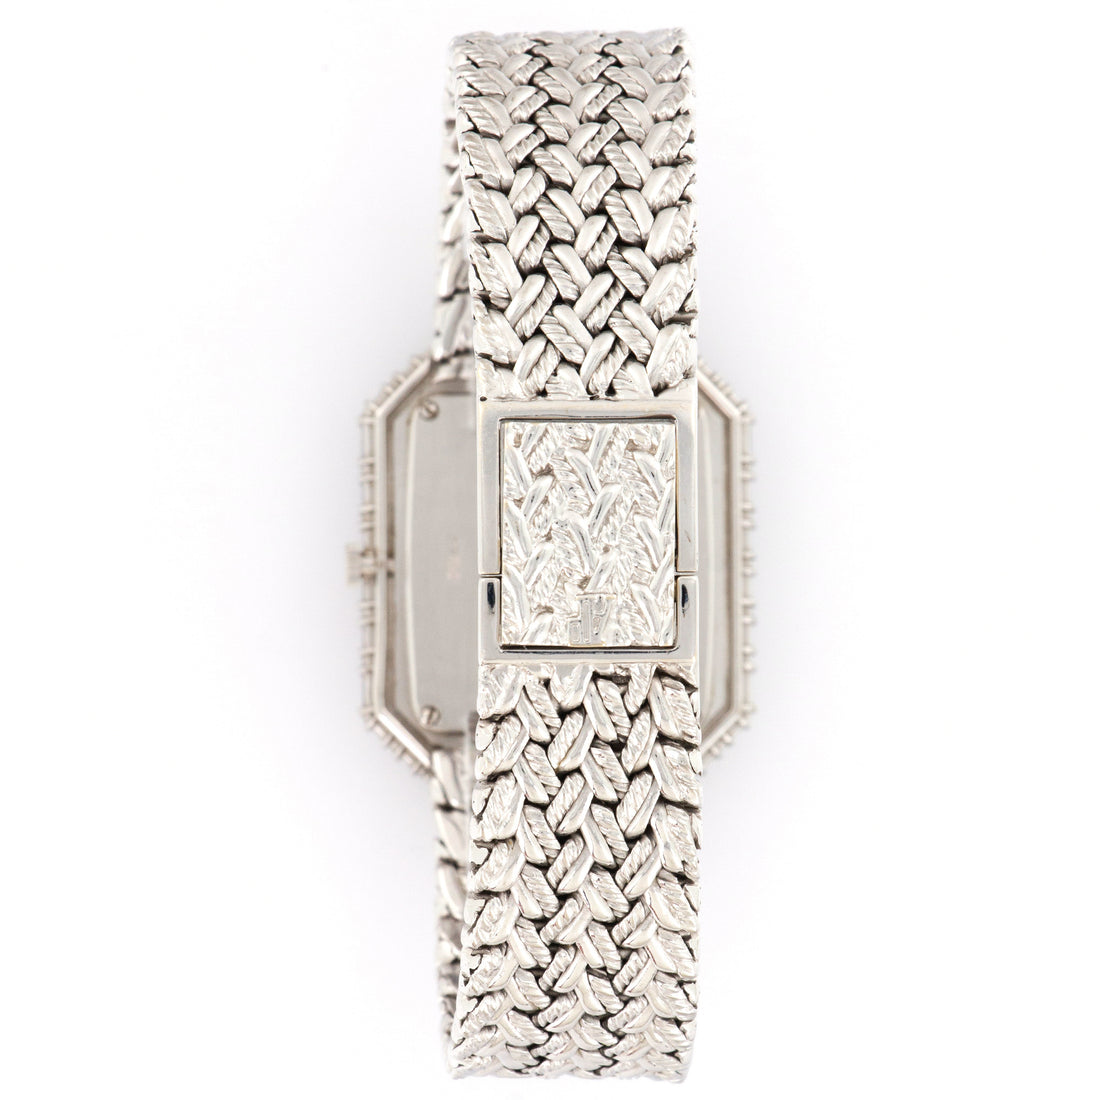 Audemars Piguet White Gold Baguette Diamond Watch